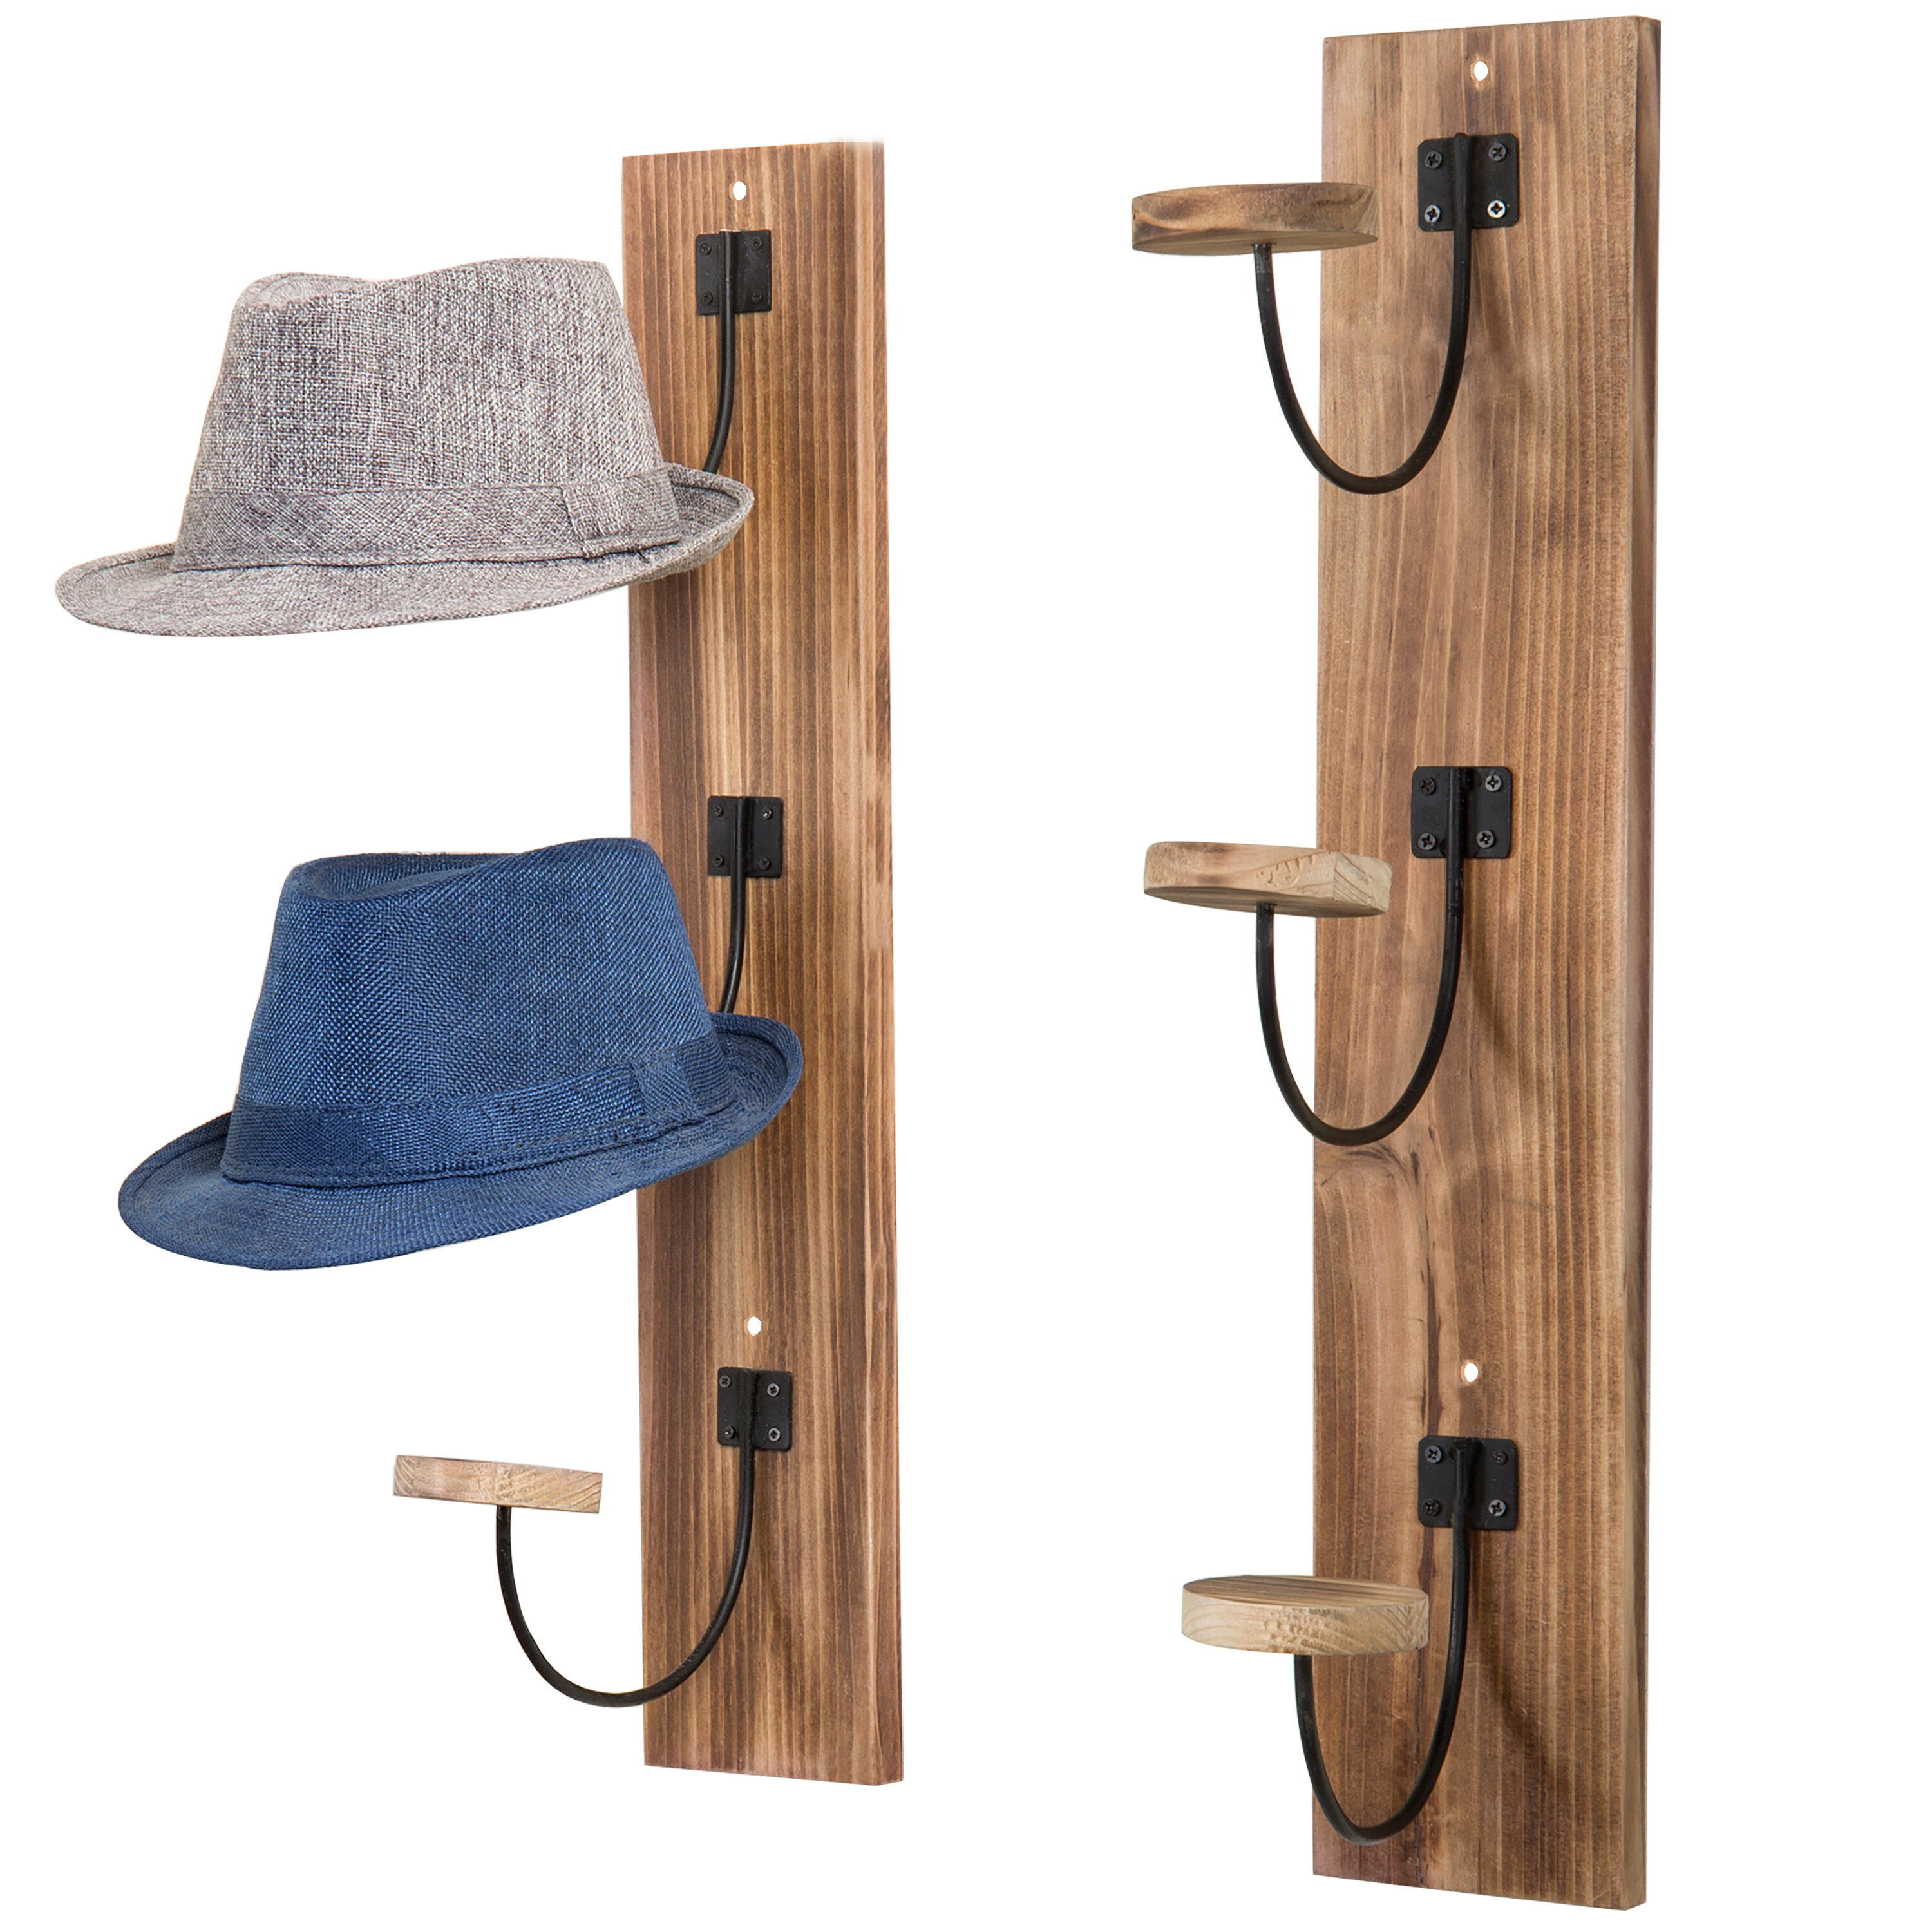 Wall mounted coat rack with three golf ball finial hooks, oak - DJA 805 –  D.J.A. Imports, Ltd.